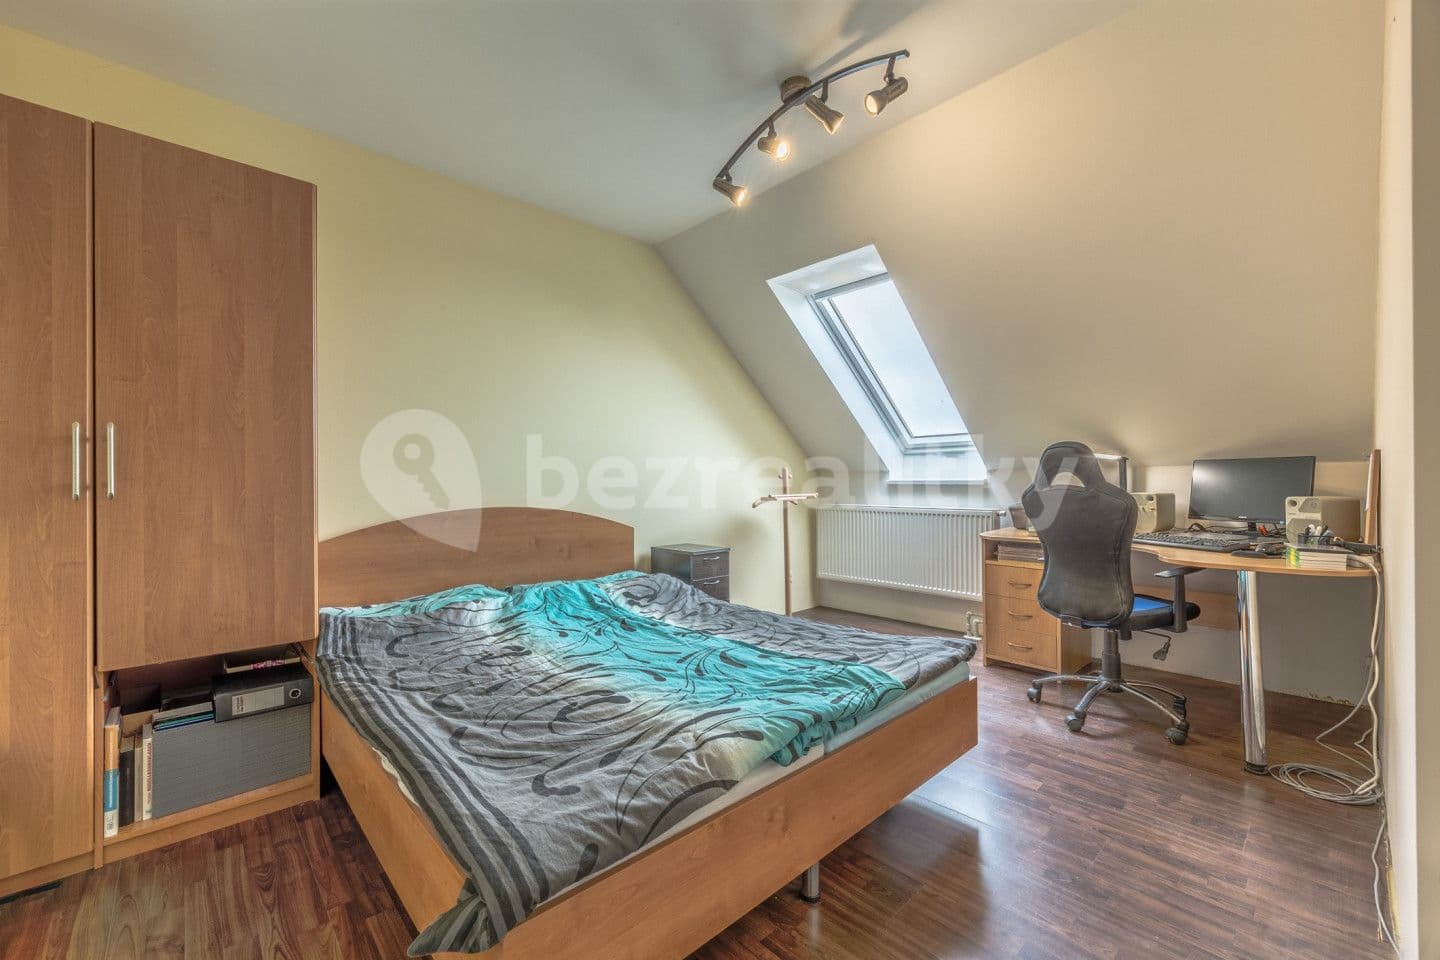 1 bedroom flat for sale, 37 m², U staré školy, Cerhenice, Středočeský Region